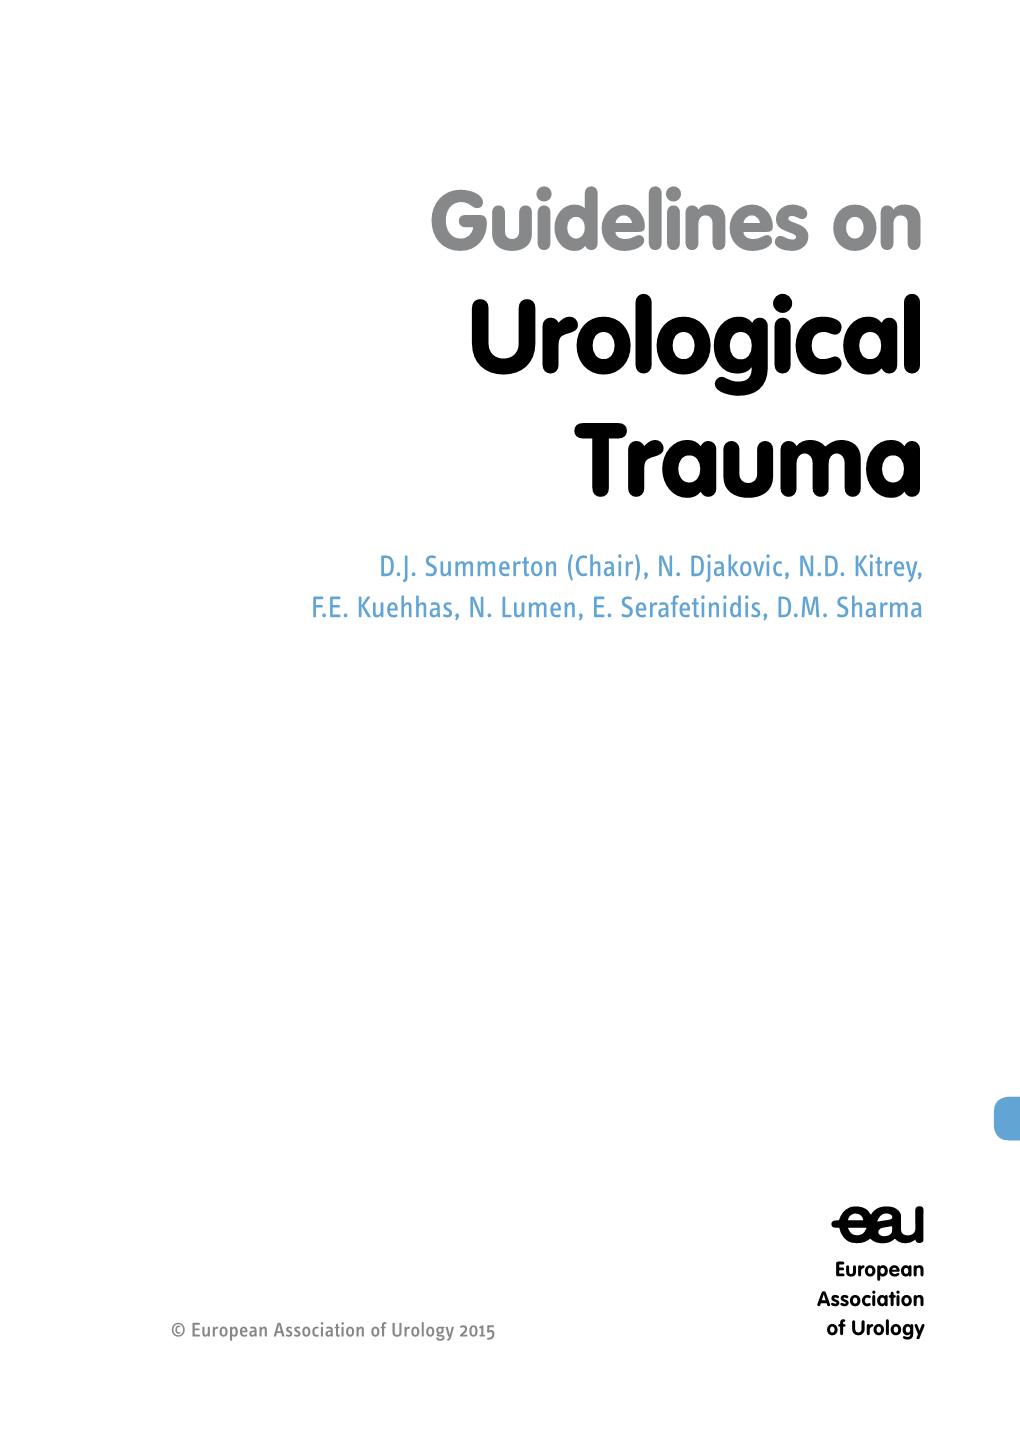 EAU Guidelines on Urological Trauma 2015